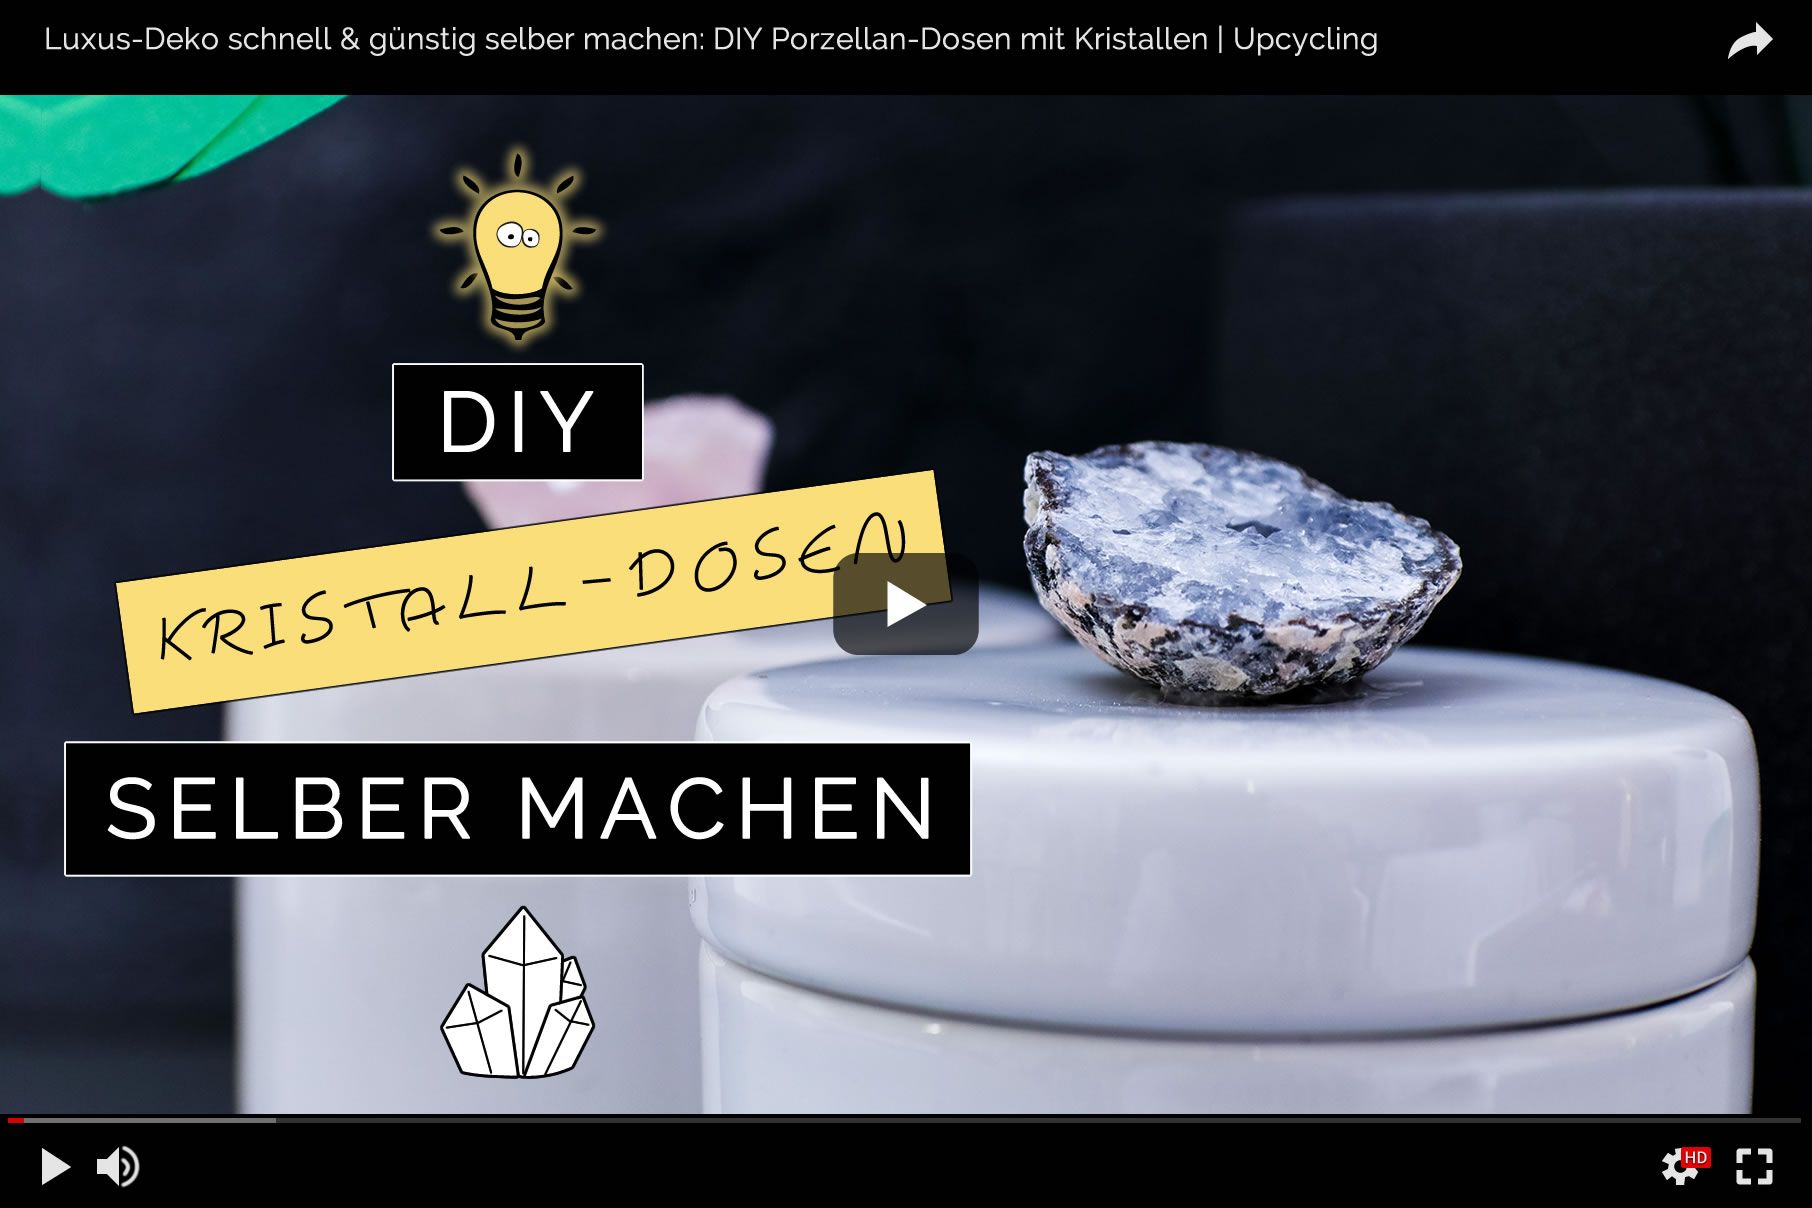 Luxus-Deko selber machen: DIY Porzellan Aufbewahrungsdosen mit Kristalldeckel schnell & günstig selbst gemacht | Filizity.com | DIY-Blog aus dem Rheinland #luxus #deko